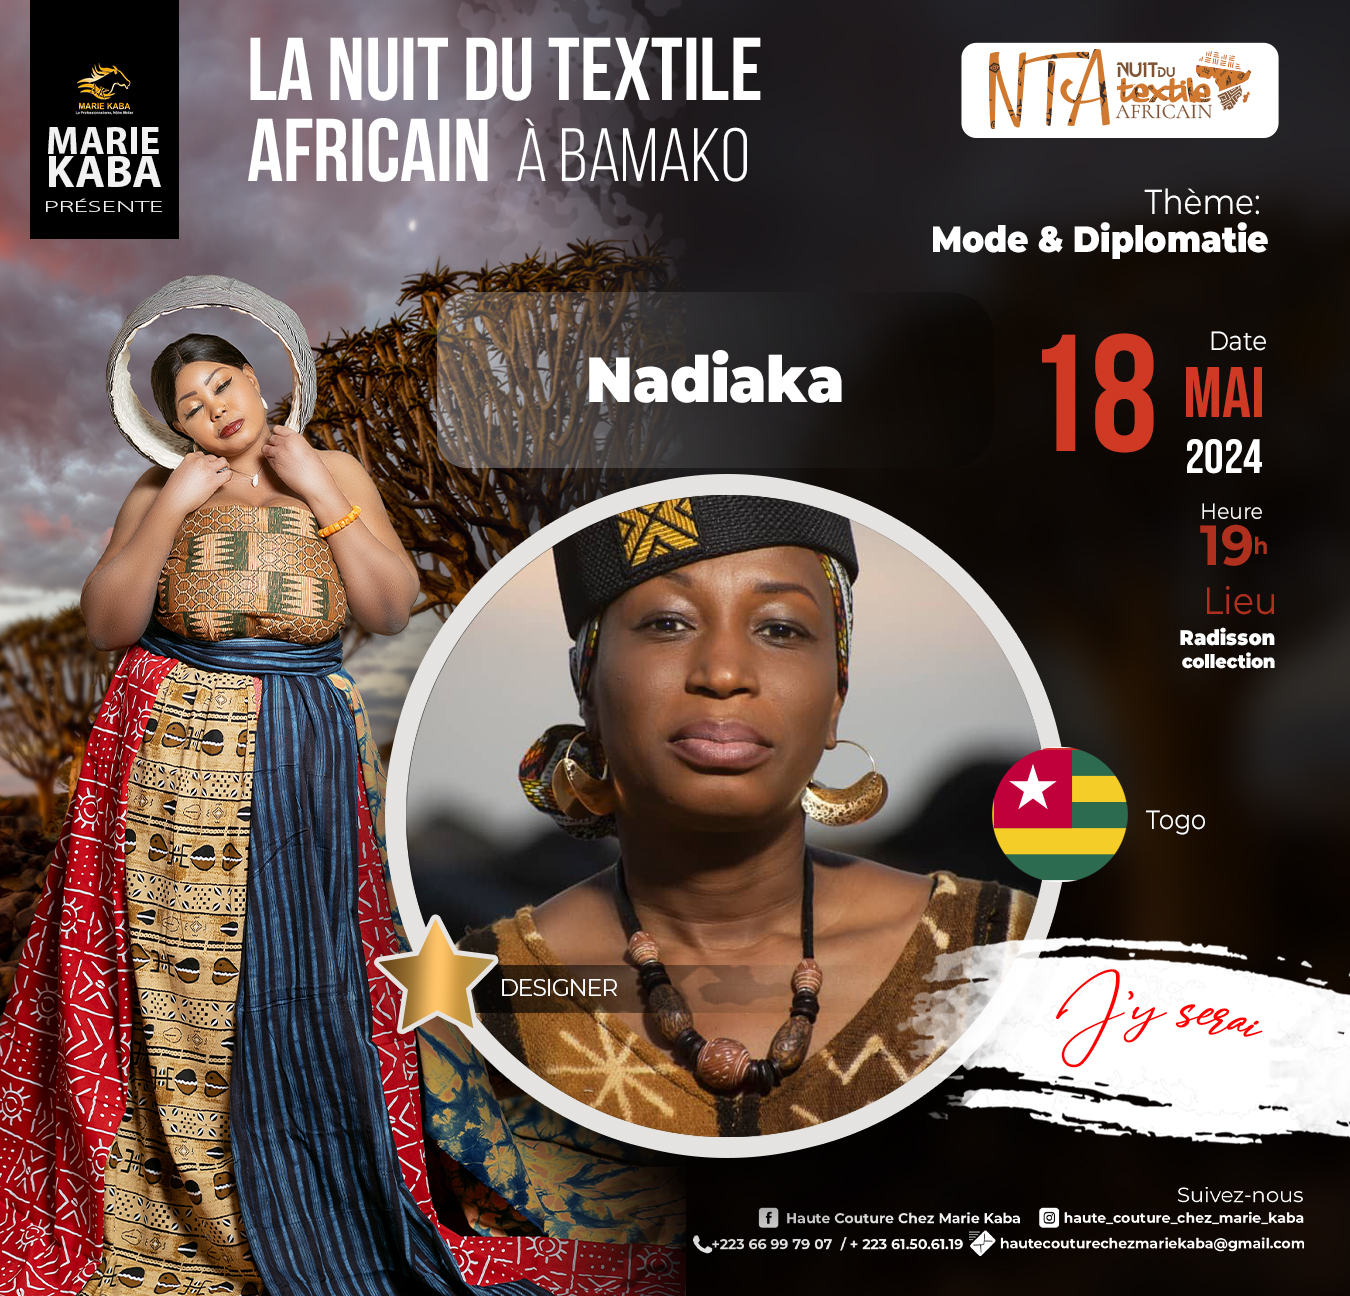 LA NUIT DU TEXTILE AFRICAIN A BAMAKO present NADIAKA from Togo